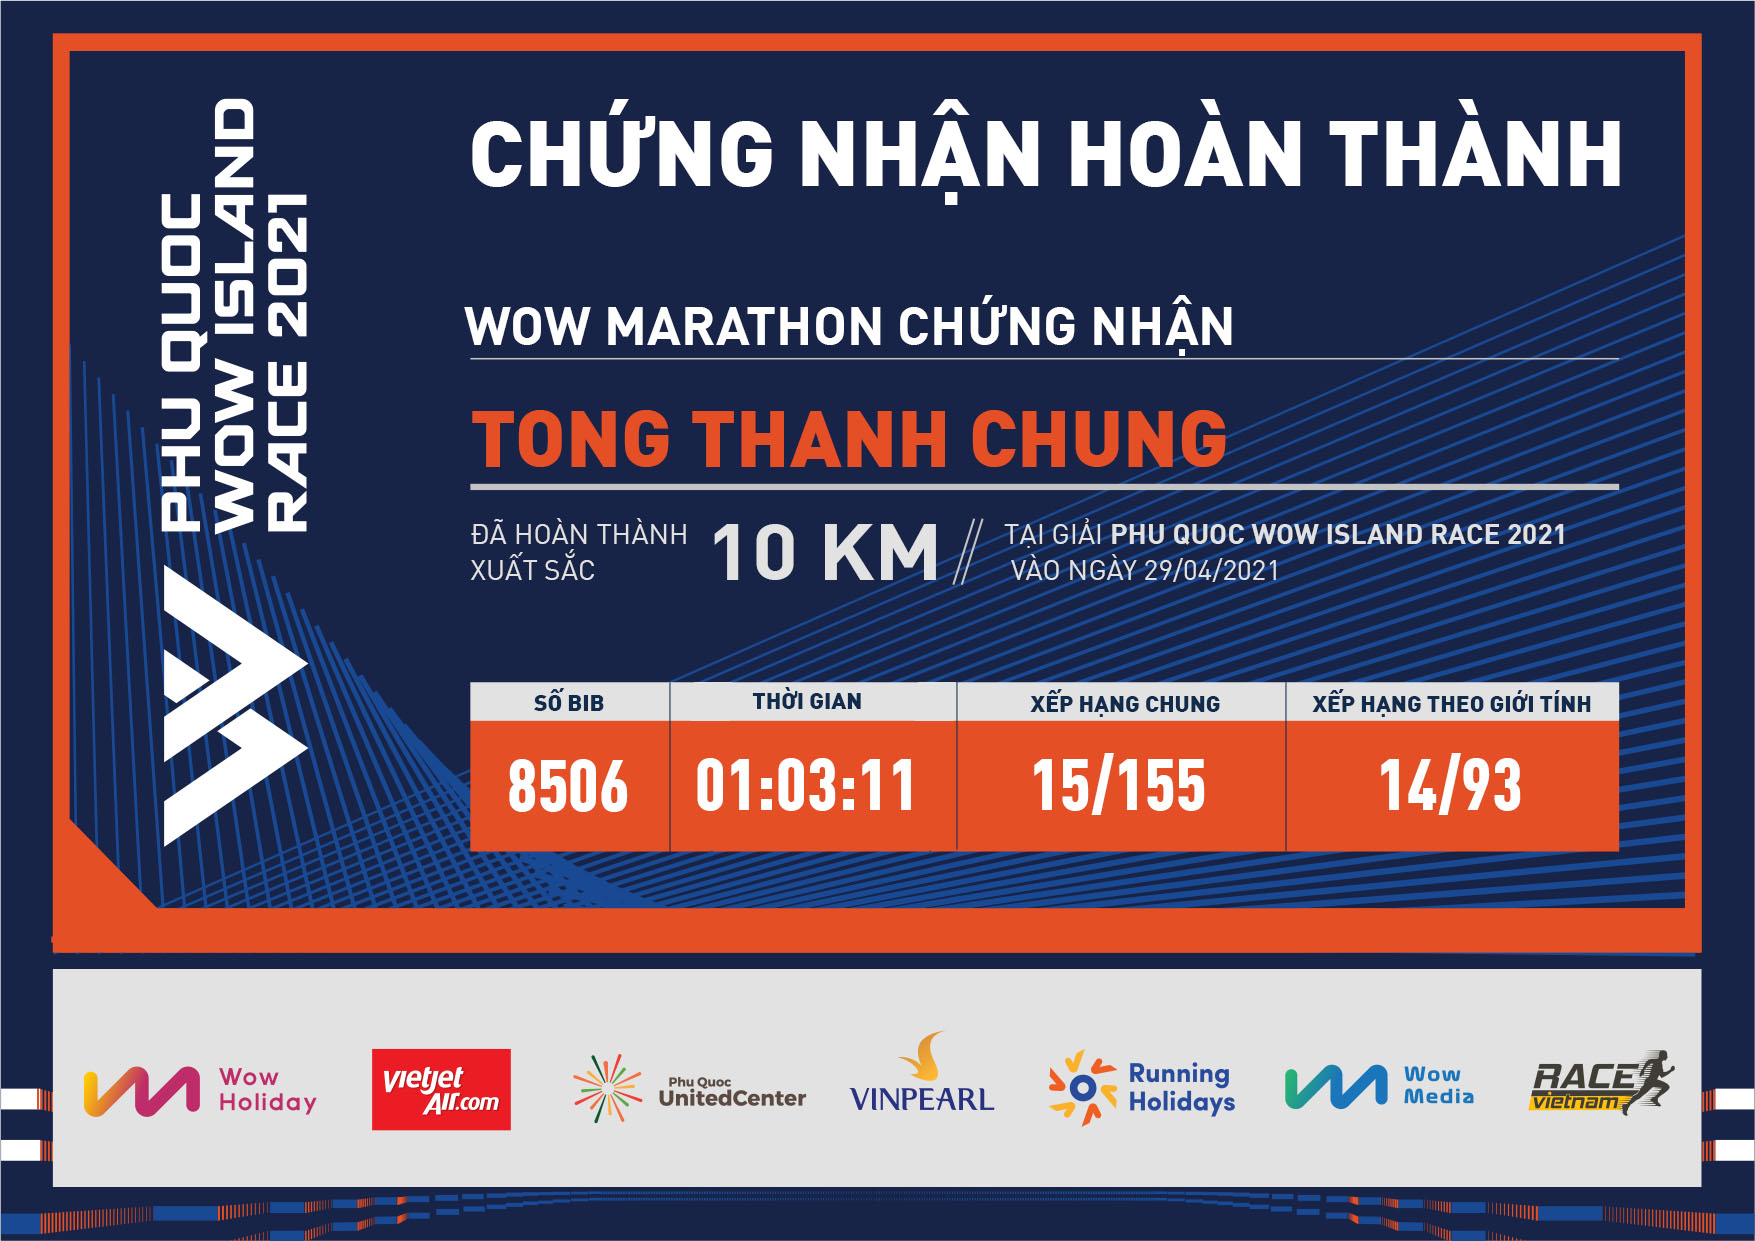 8506 - TONG THANH CHUNG